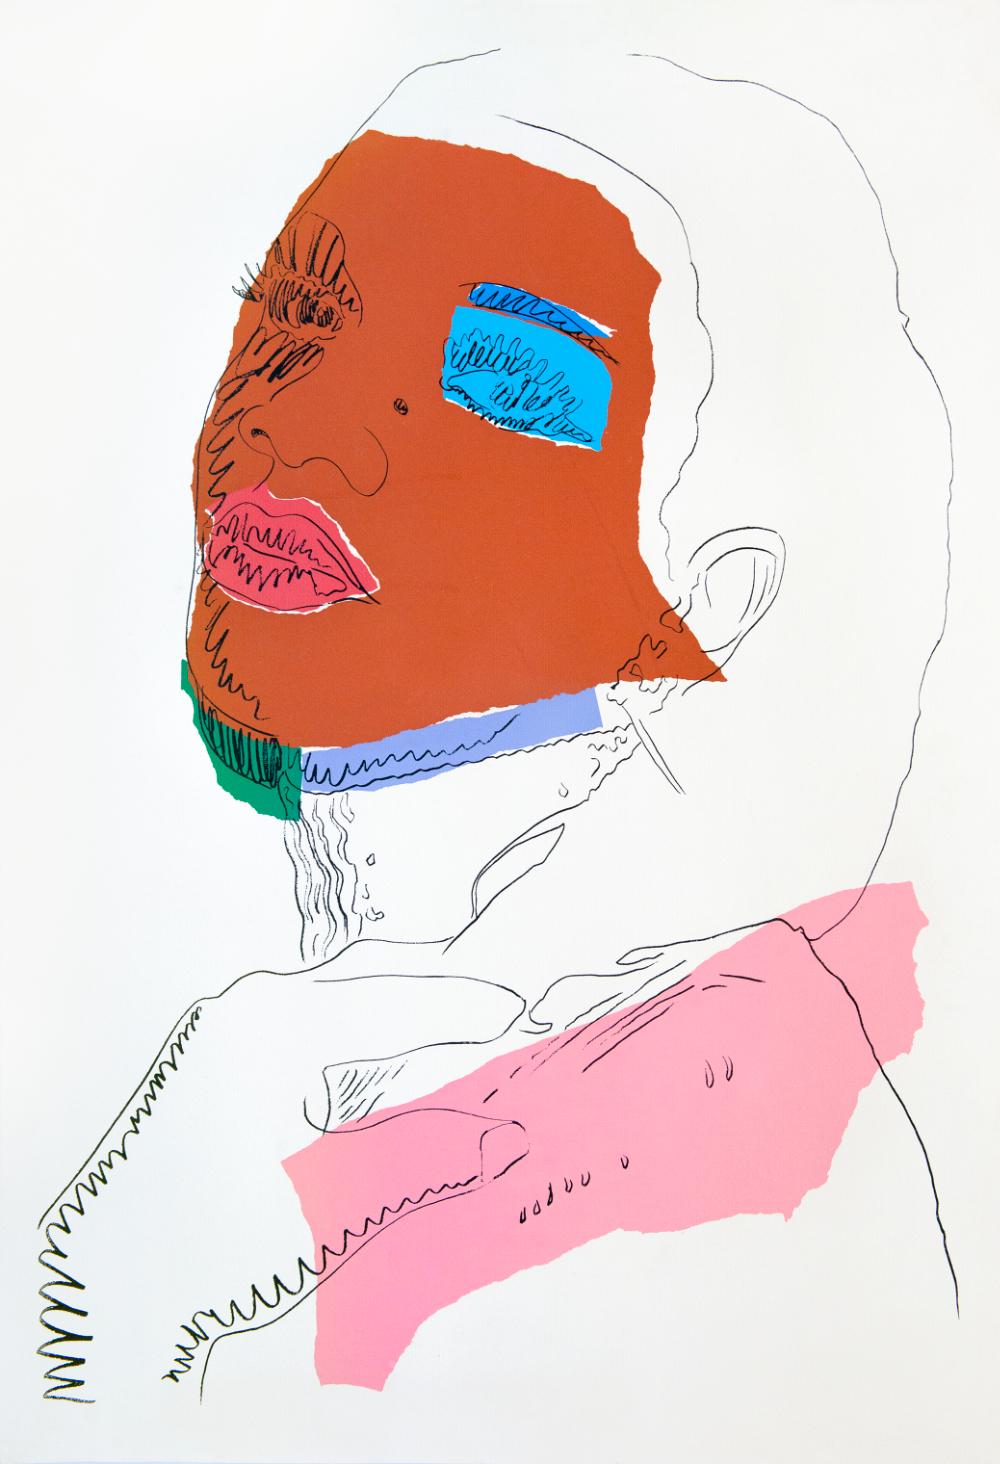 Andy Warhol Portrait Print – Sehr geehrte Damen und Herren